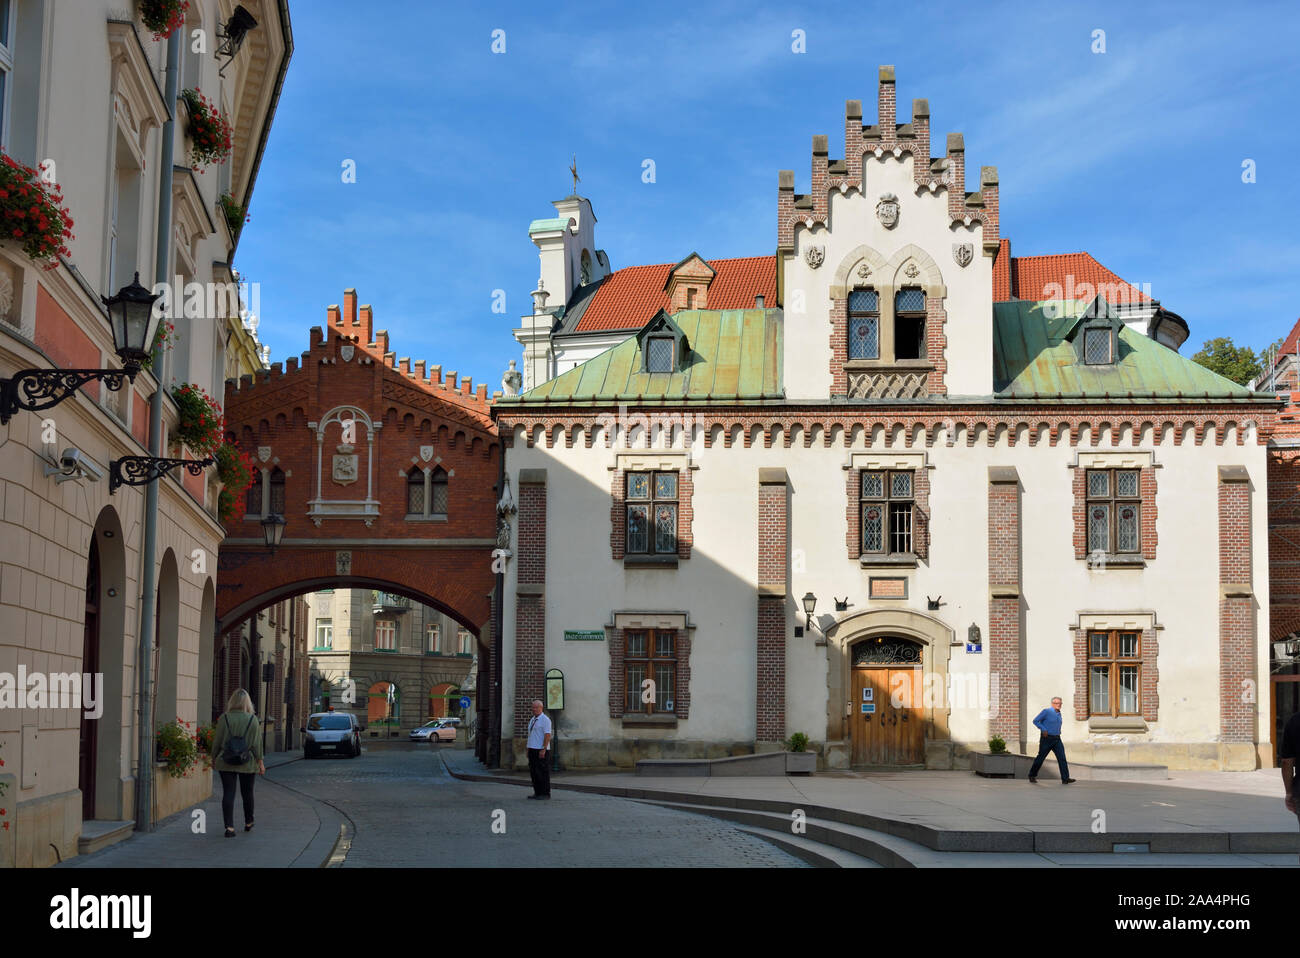 Rue de la vieille ville de Cracovie, Site du patrimoine mondial de l'Unesco. Pologne Banque D'Images